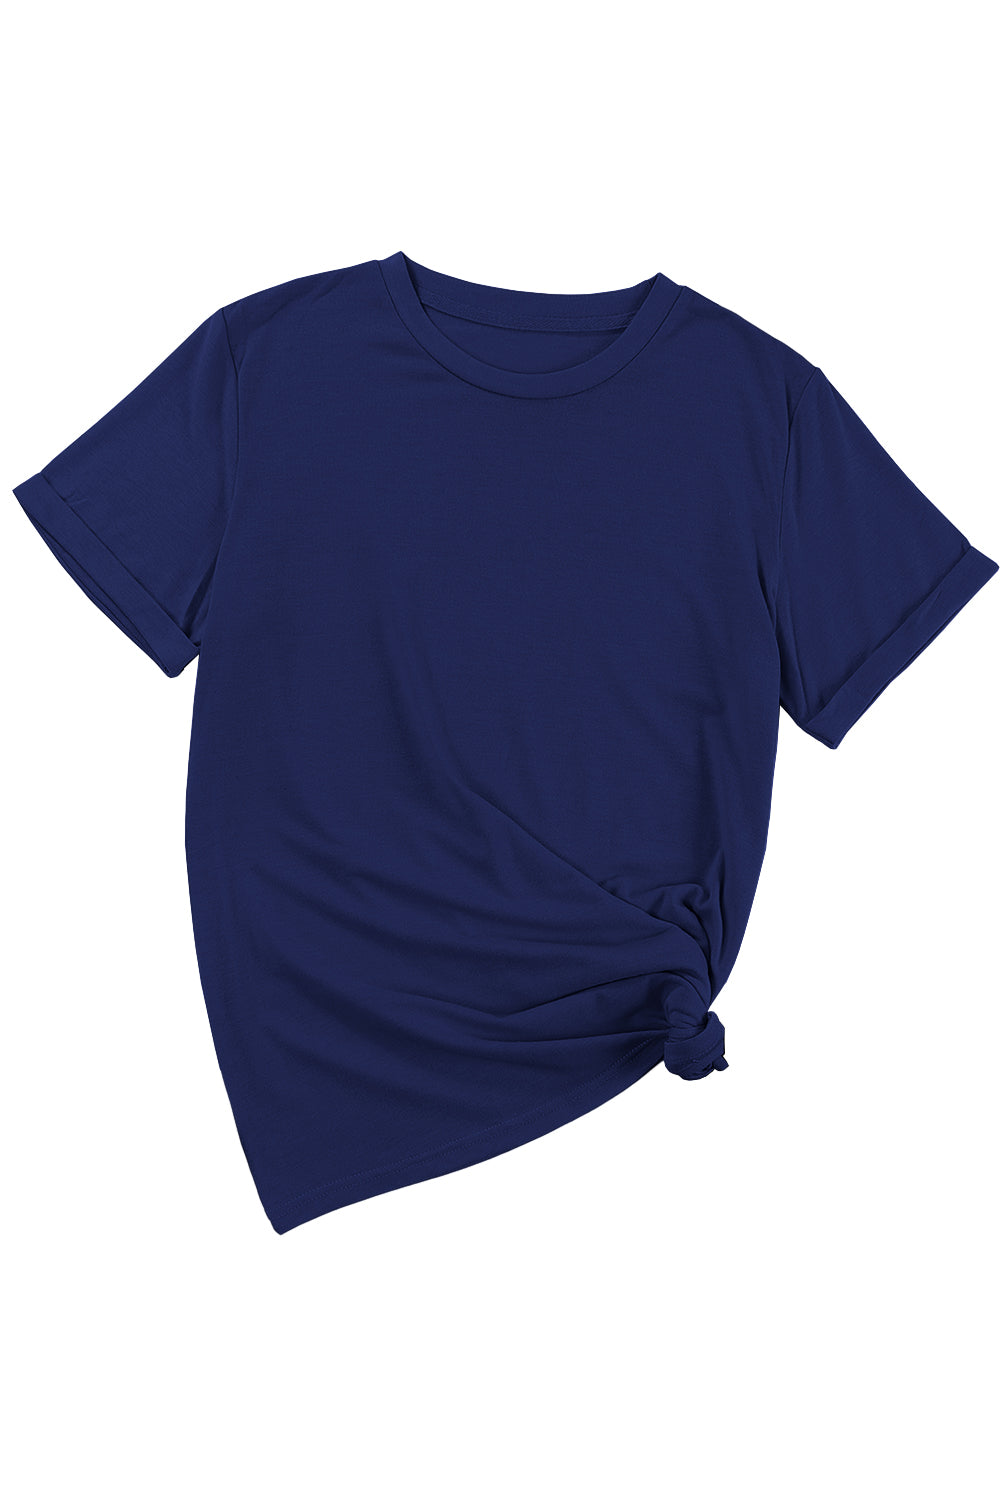 T-shirt bleu décontracté uni à col rond